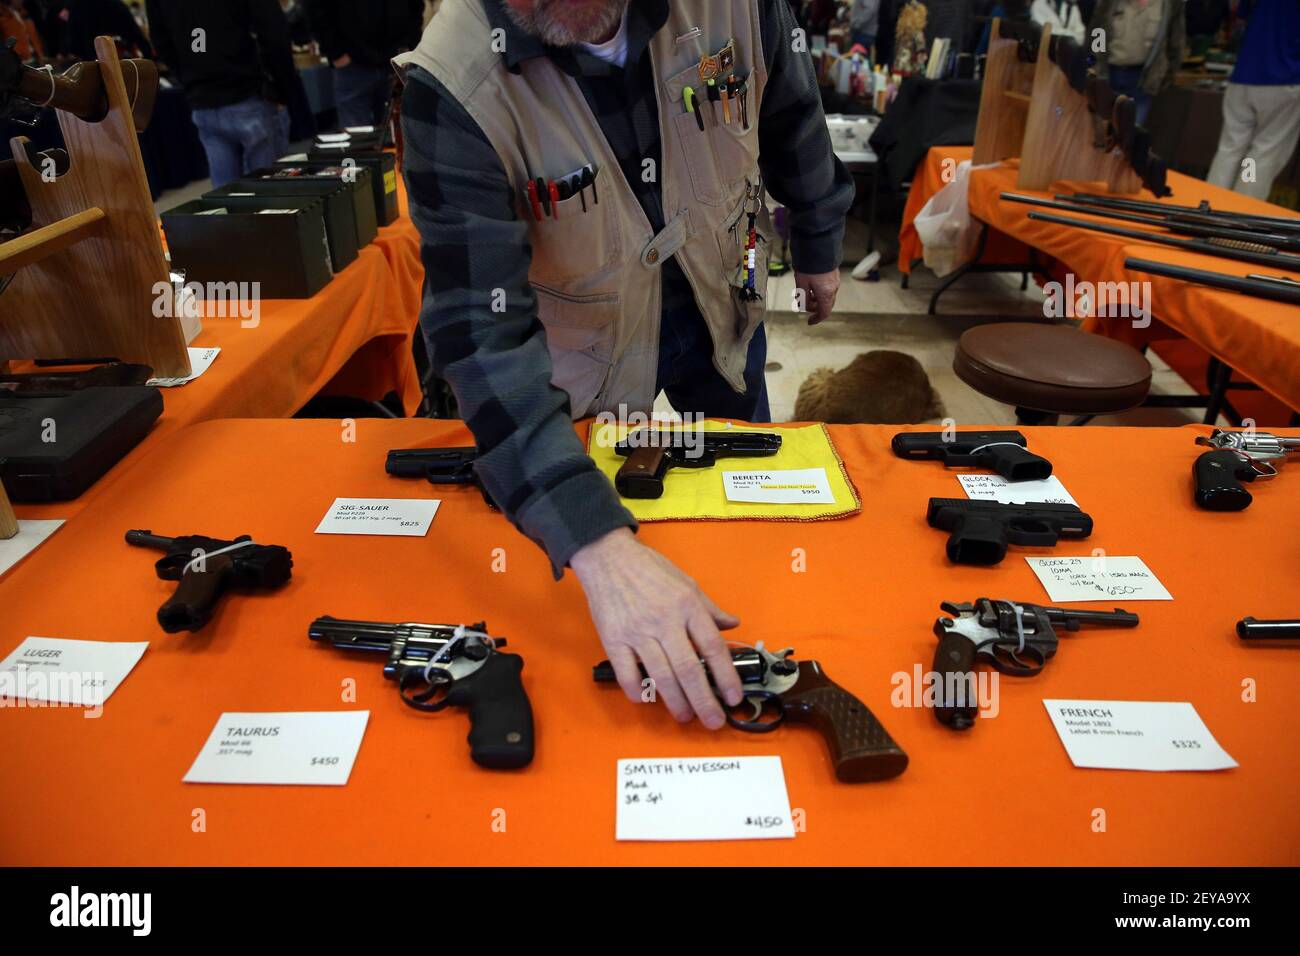 Febrero 9 2013 - Fort Wayne, Indiana -Bob Pfefferkorn vende pistolas en su stand en el espectáculo Gun, Knife y Outdoorsmen en Fort Wayne, Indiana, el 9 de febrero de 2013. Crédito de la foto: Brian Cassella/Chicago Tribune/MCT/Sipa USA Foto de stock